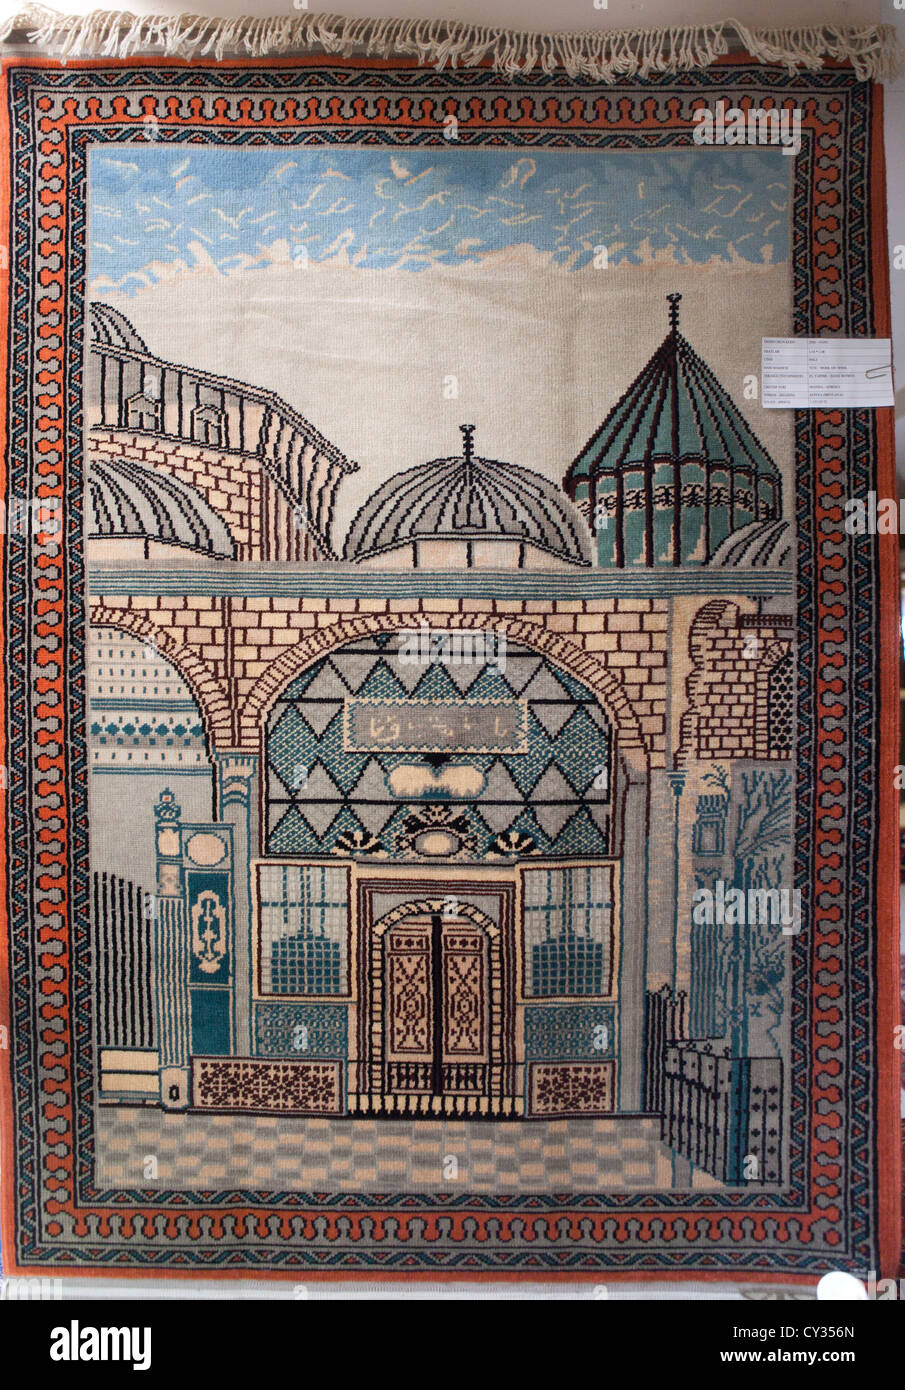 Figura patrón alfombra turca artesanal en tejido de habilidades Foto de stock